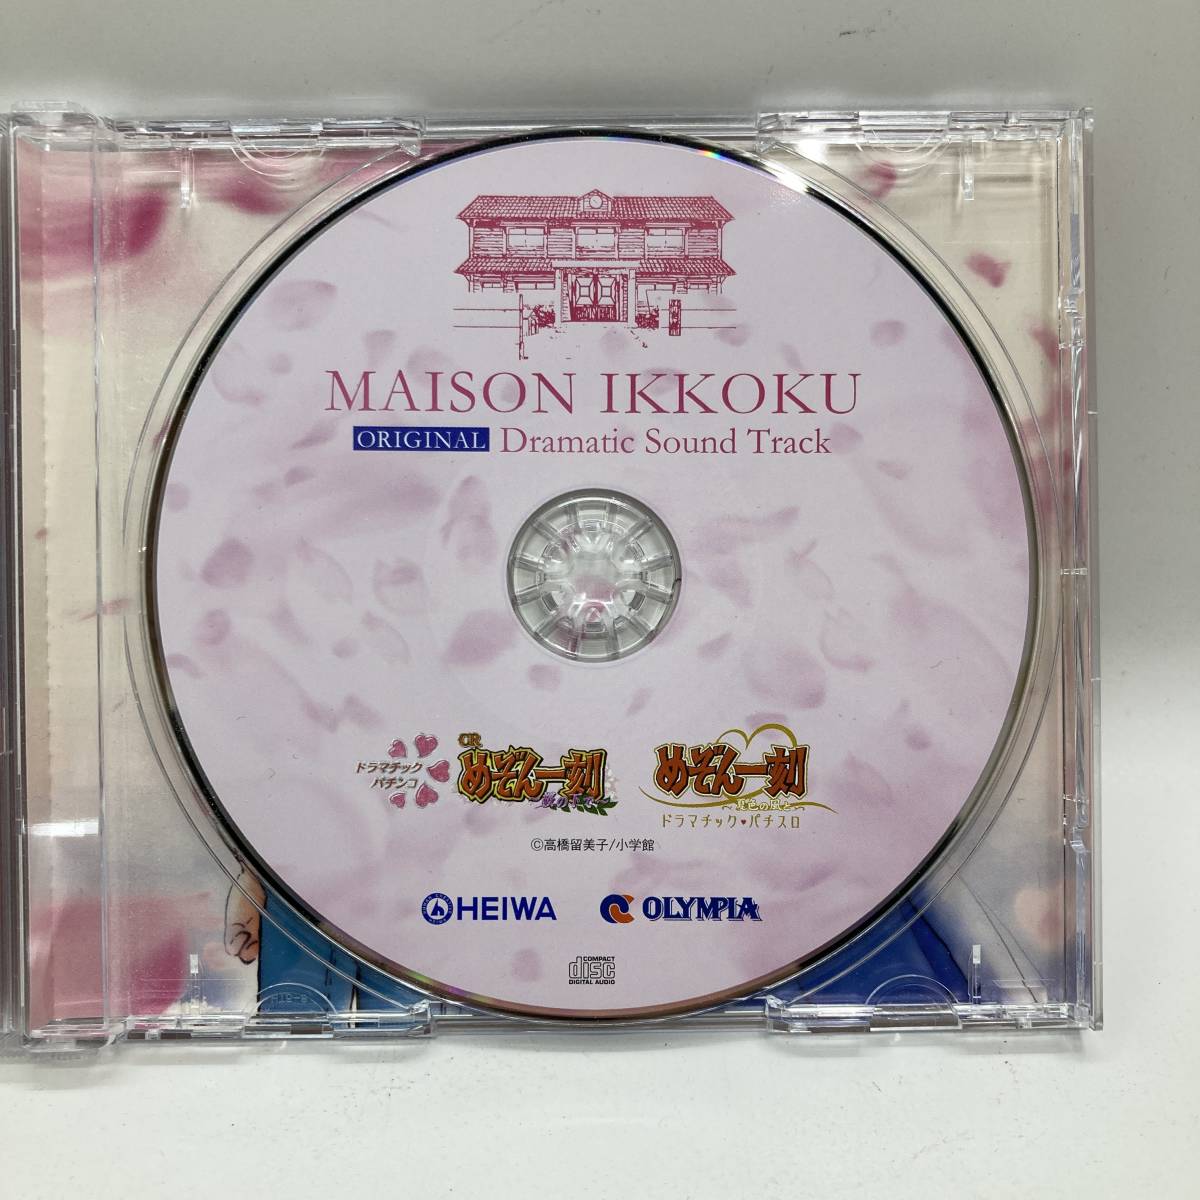  патинко игровой автомат игровой автомат Maison Ikkoku ORIGINAL Dramatic Sound Track оригинал гонг matic саундтрек саундтрек [ б/у товар ]